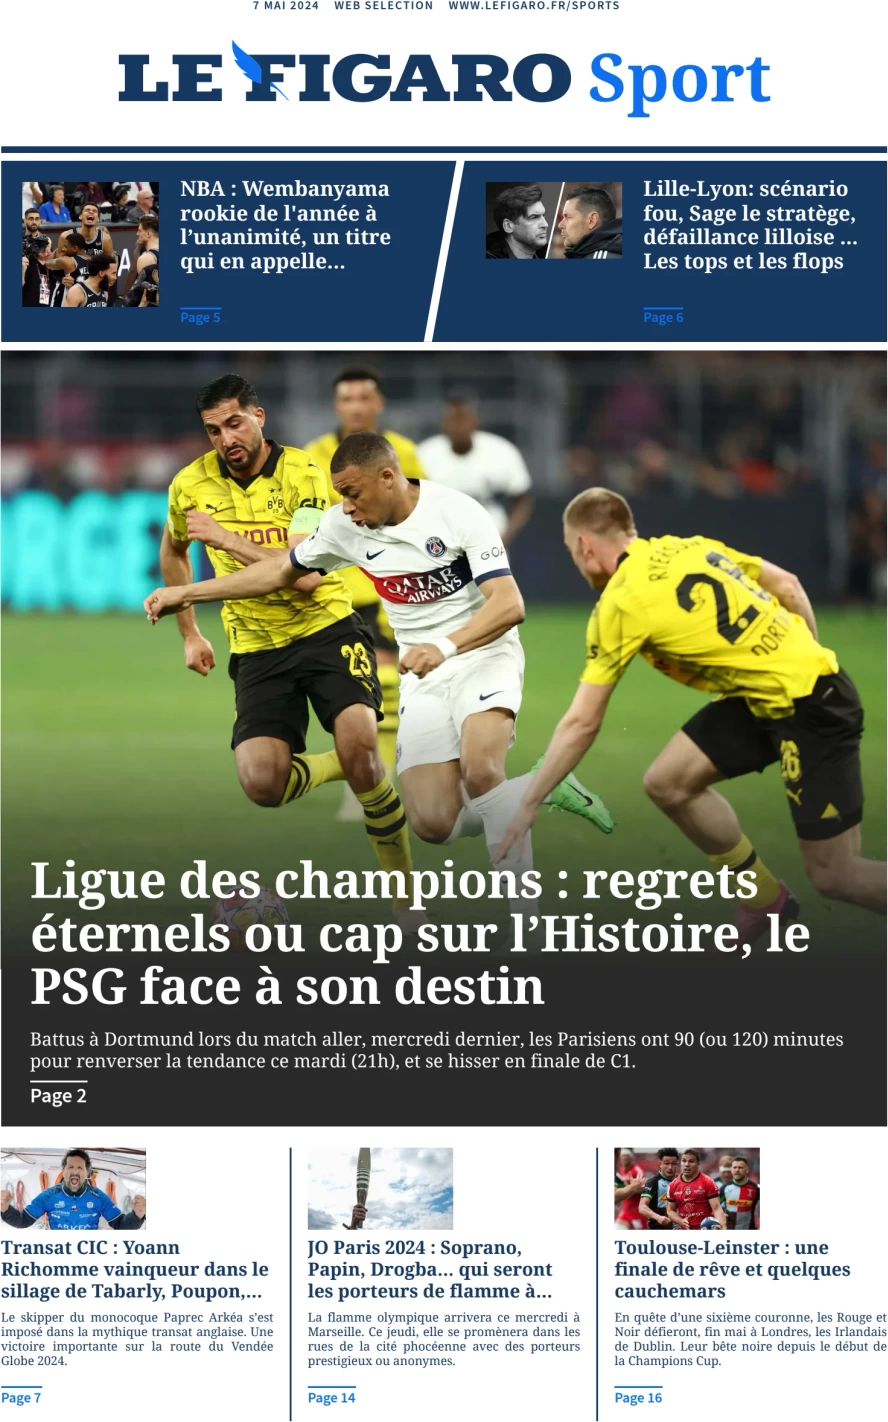 anteprima della prima pagina di Le Figaro SPORT